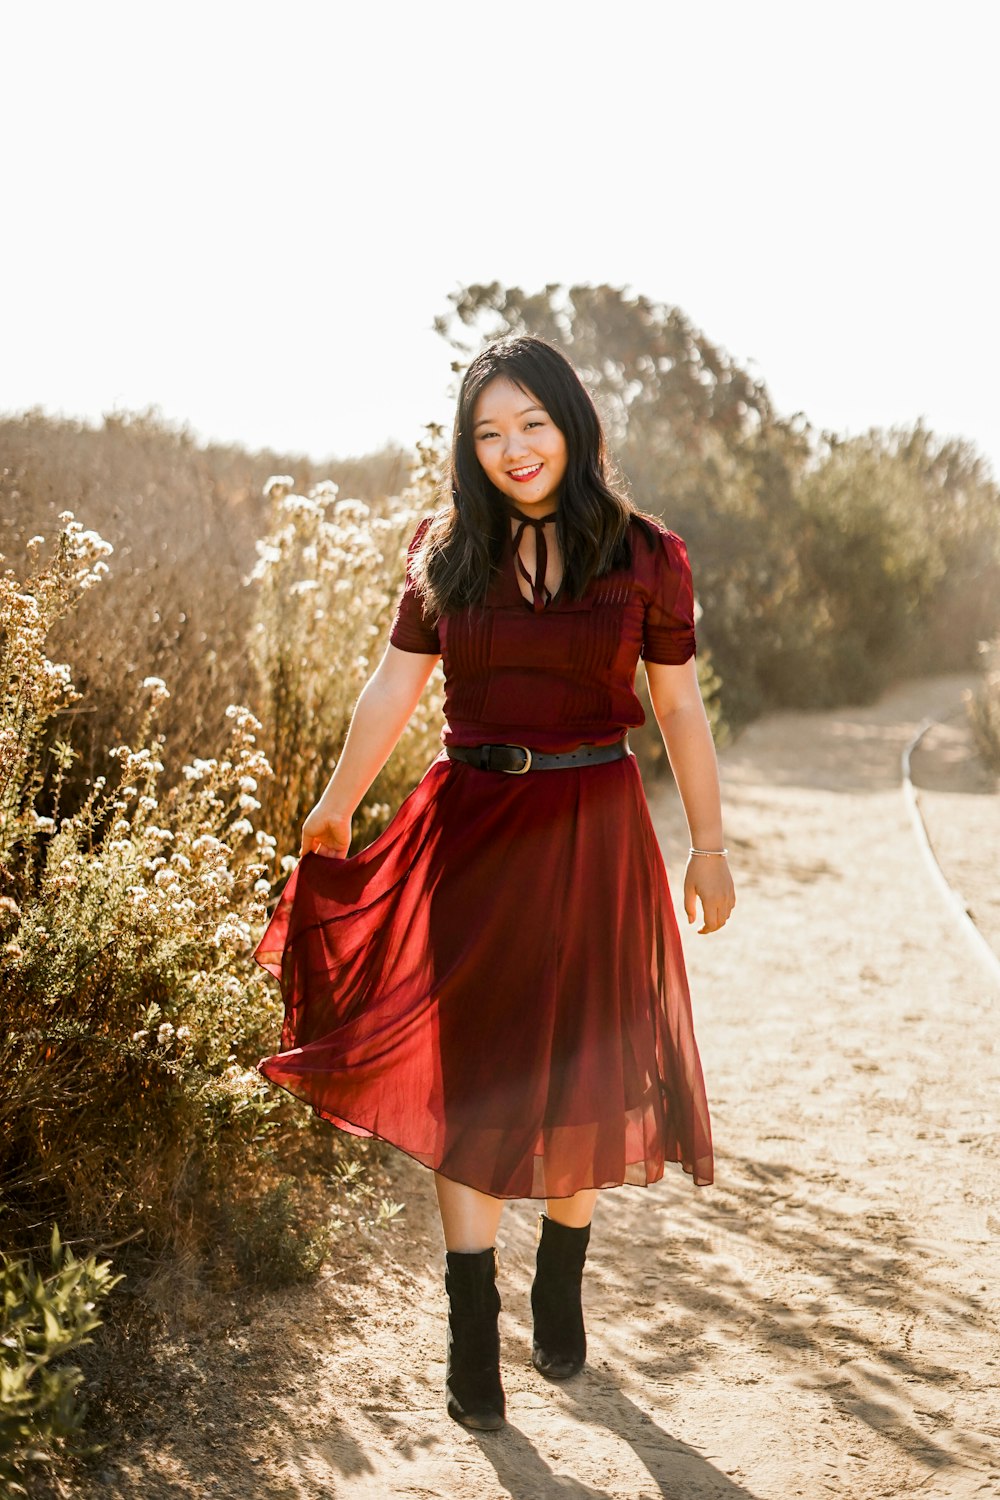 Une femme en robe rouge marchant sur un chemin de terre